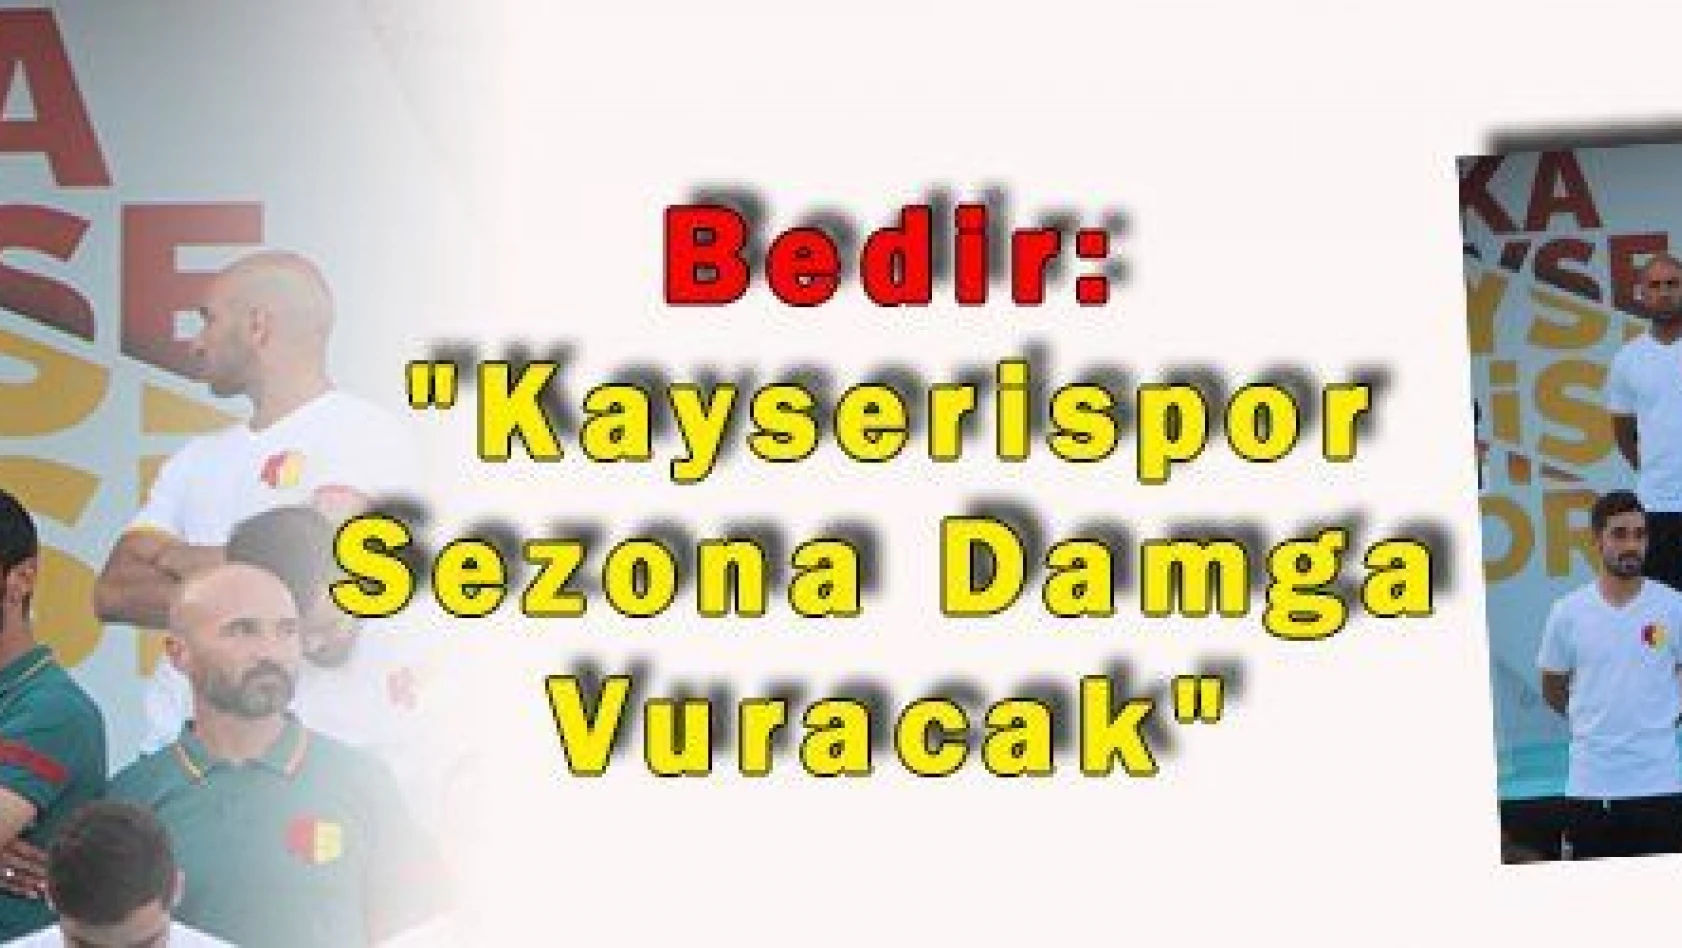 Bedir: 'Kayserispor Sezona Damga Vuracak' 